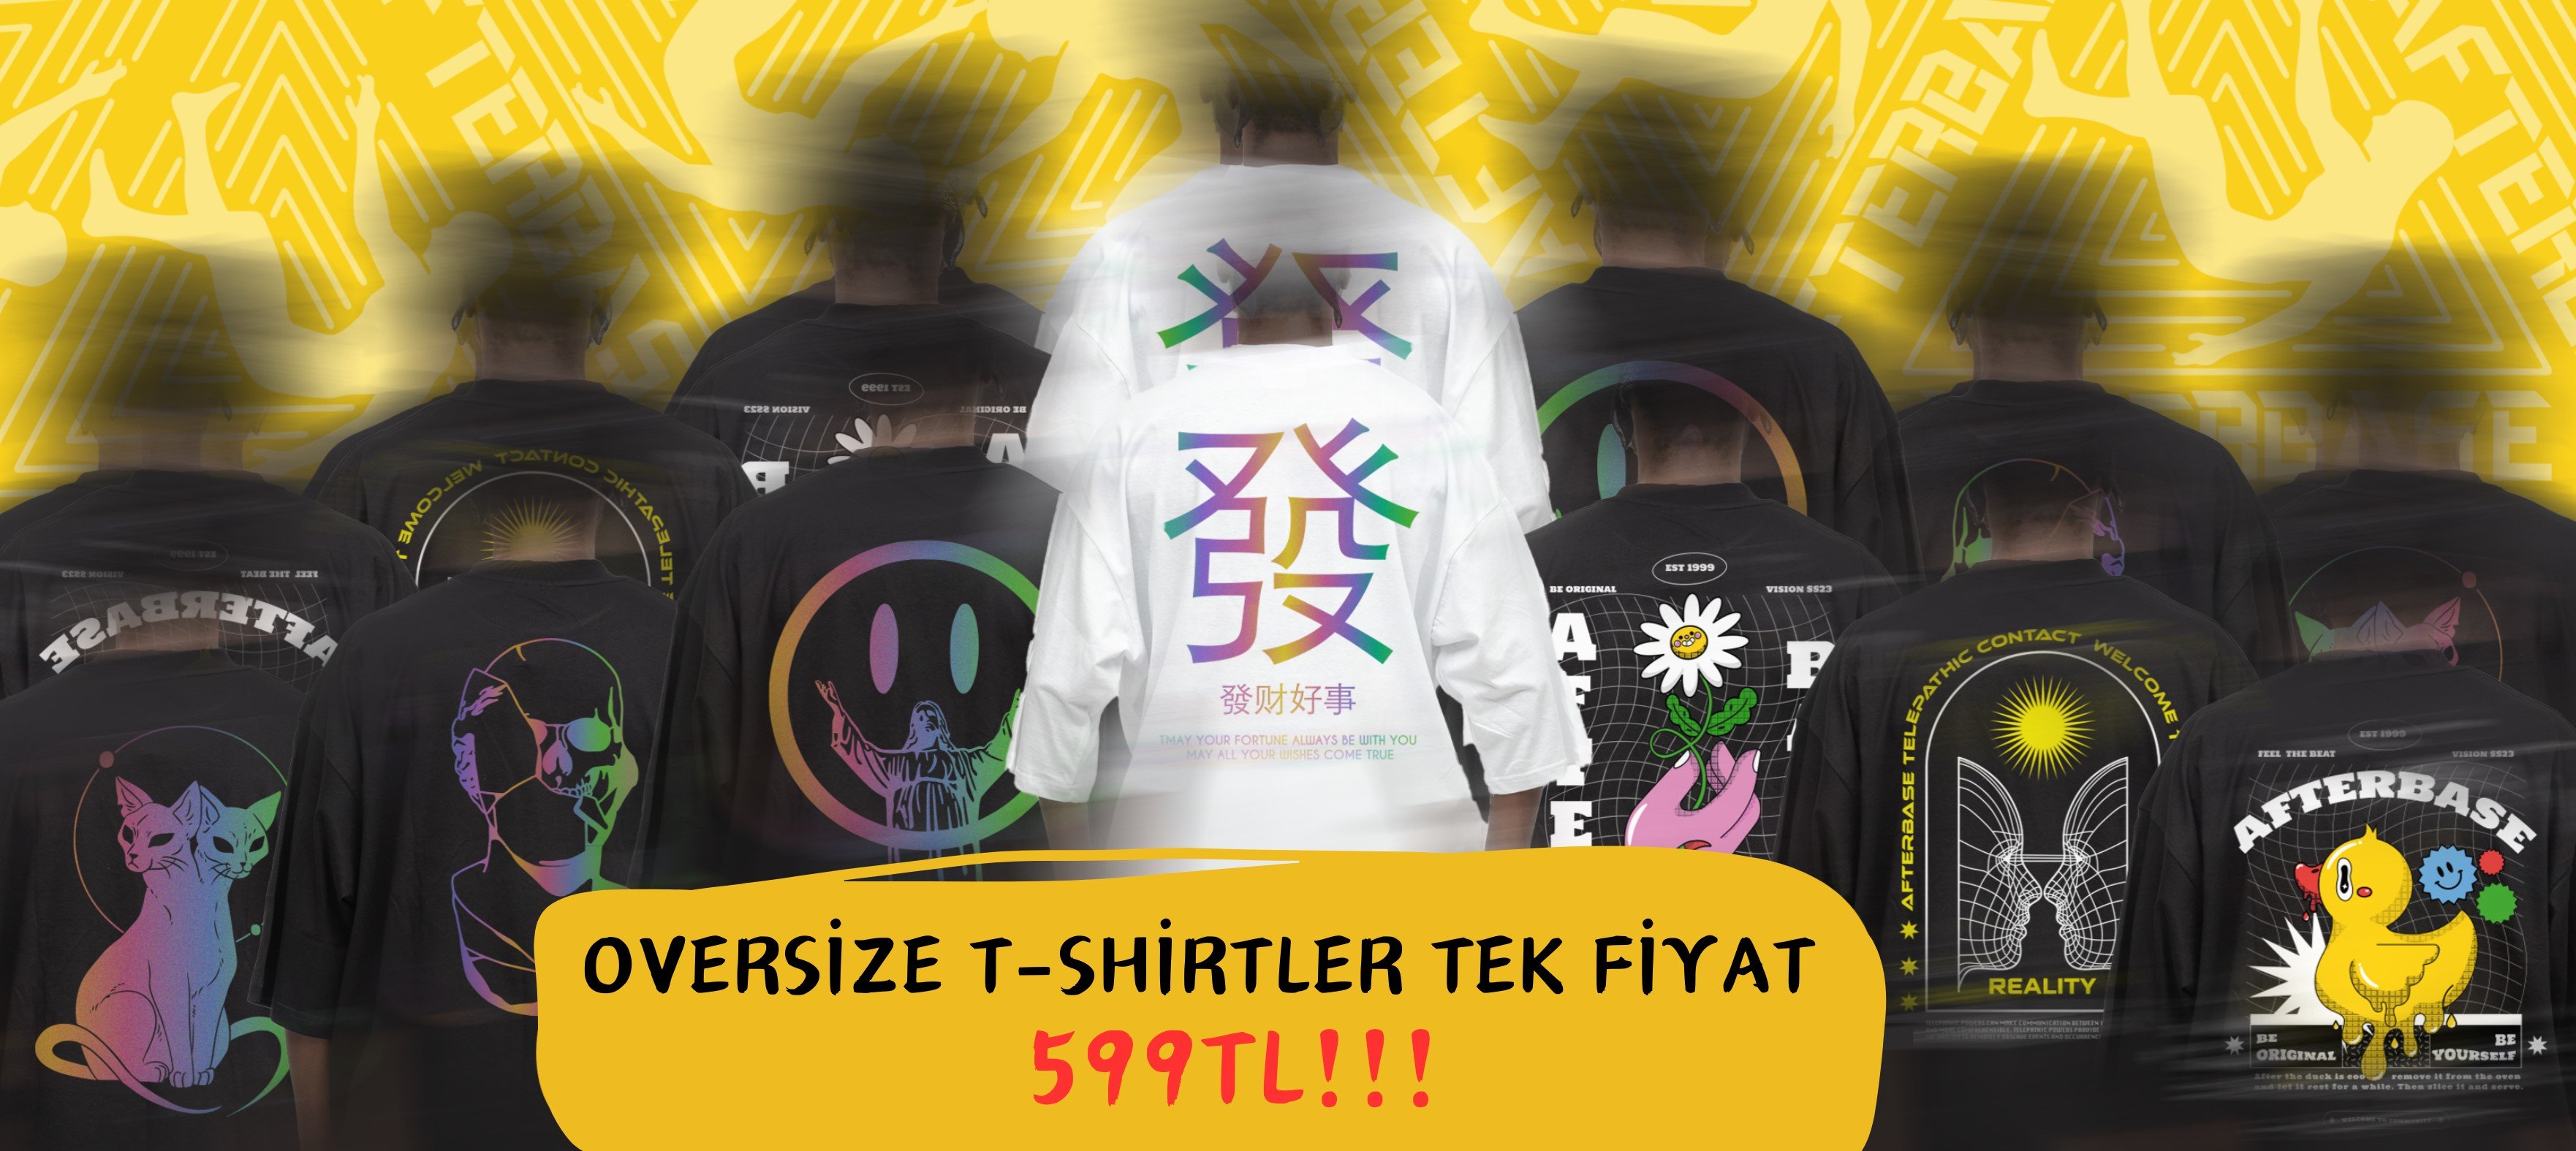 Oversize T-Shirtler Tek Fiyat 599 tl